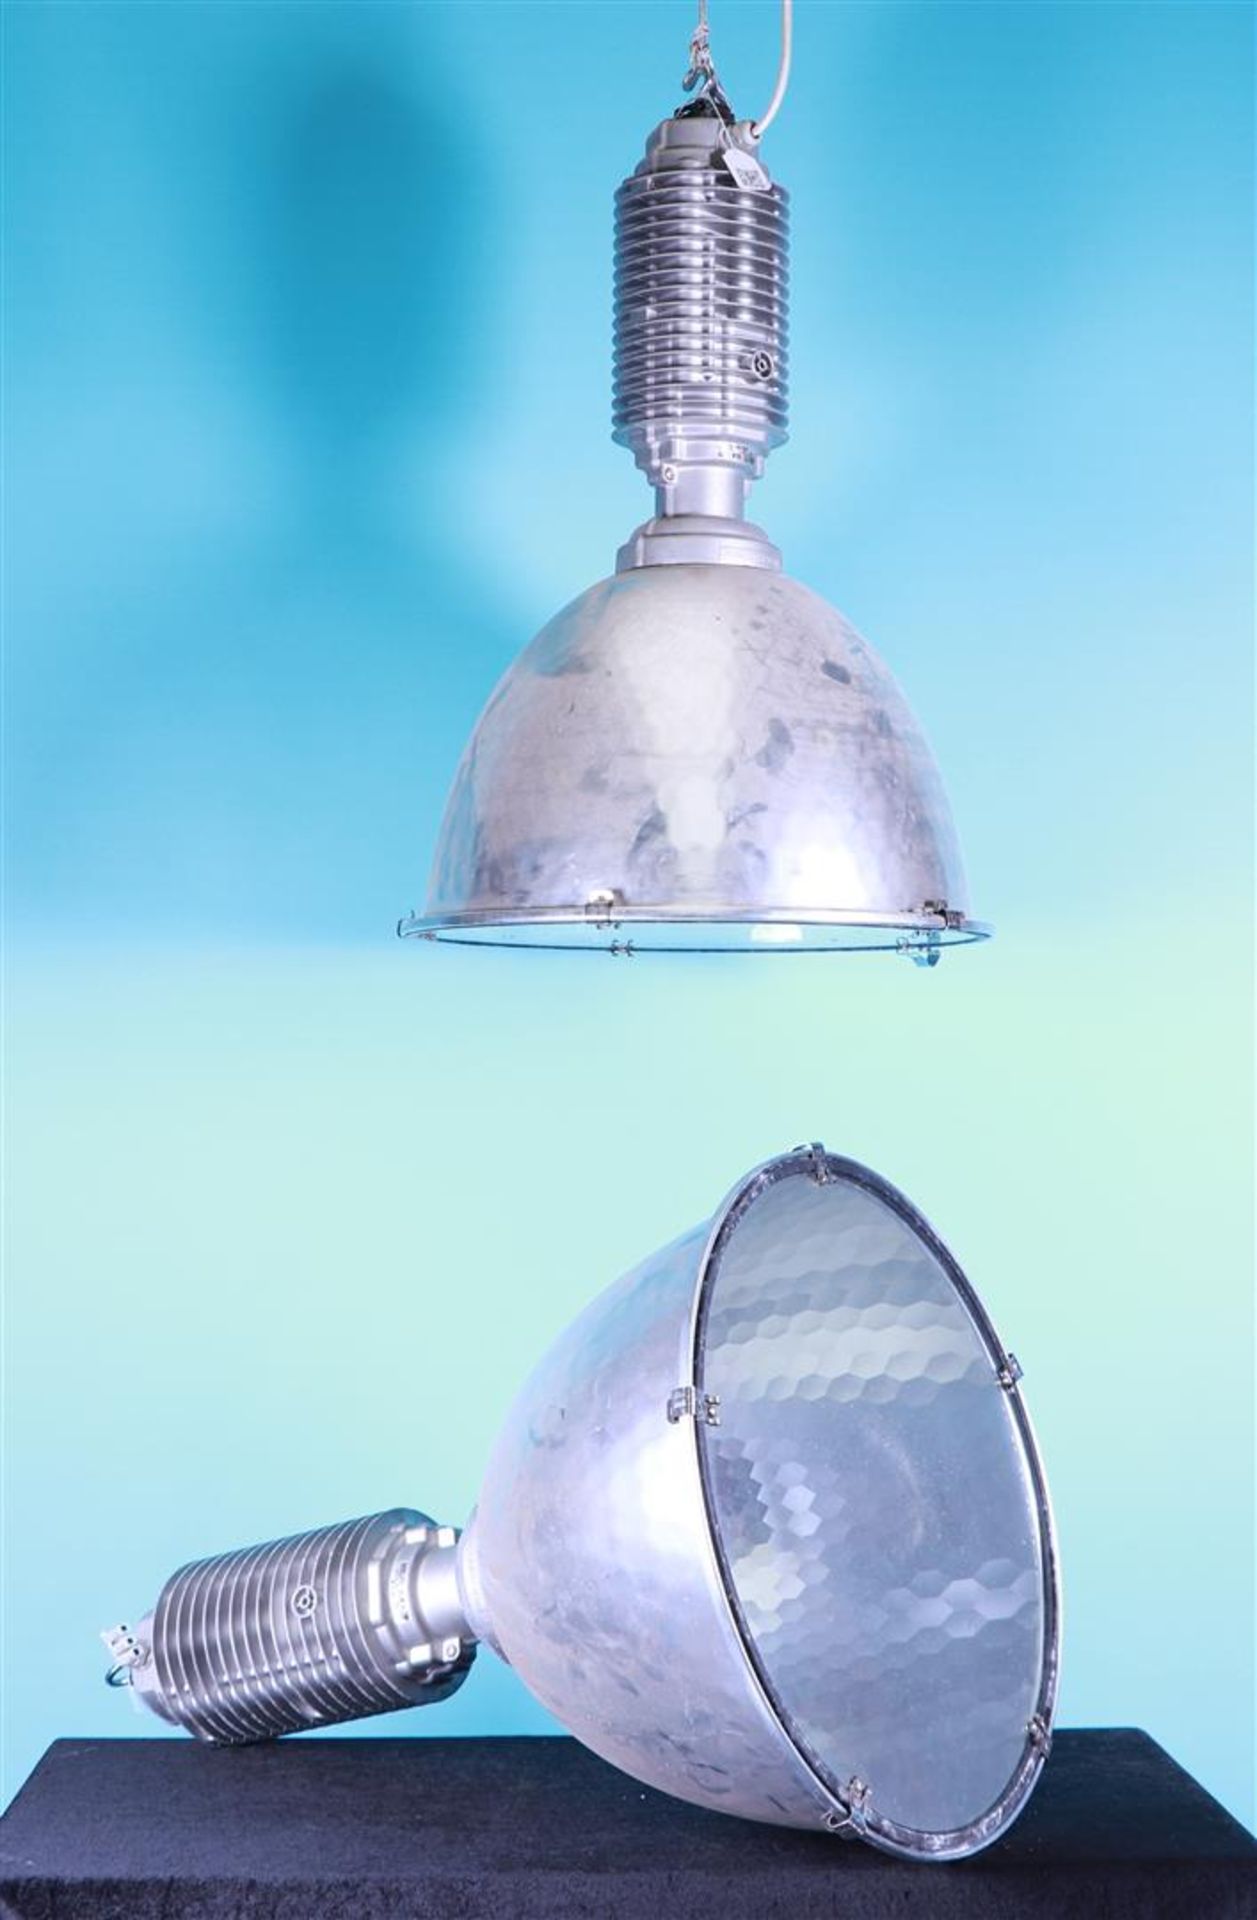 Two aluminum industrial lamps, Zumtobel StaffIP20.
85 x 45 cm.